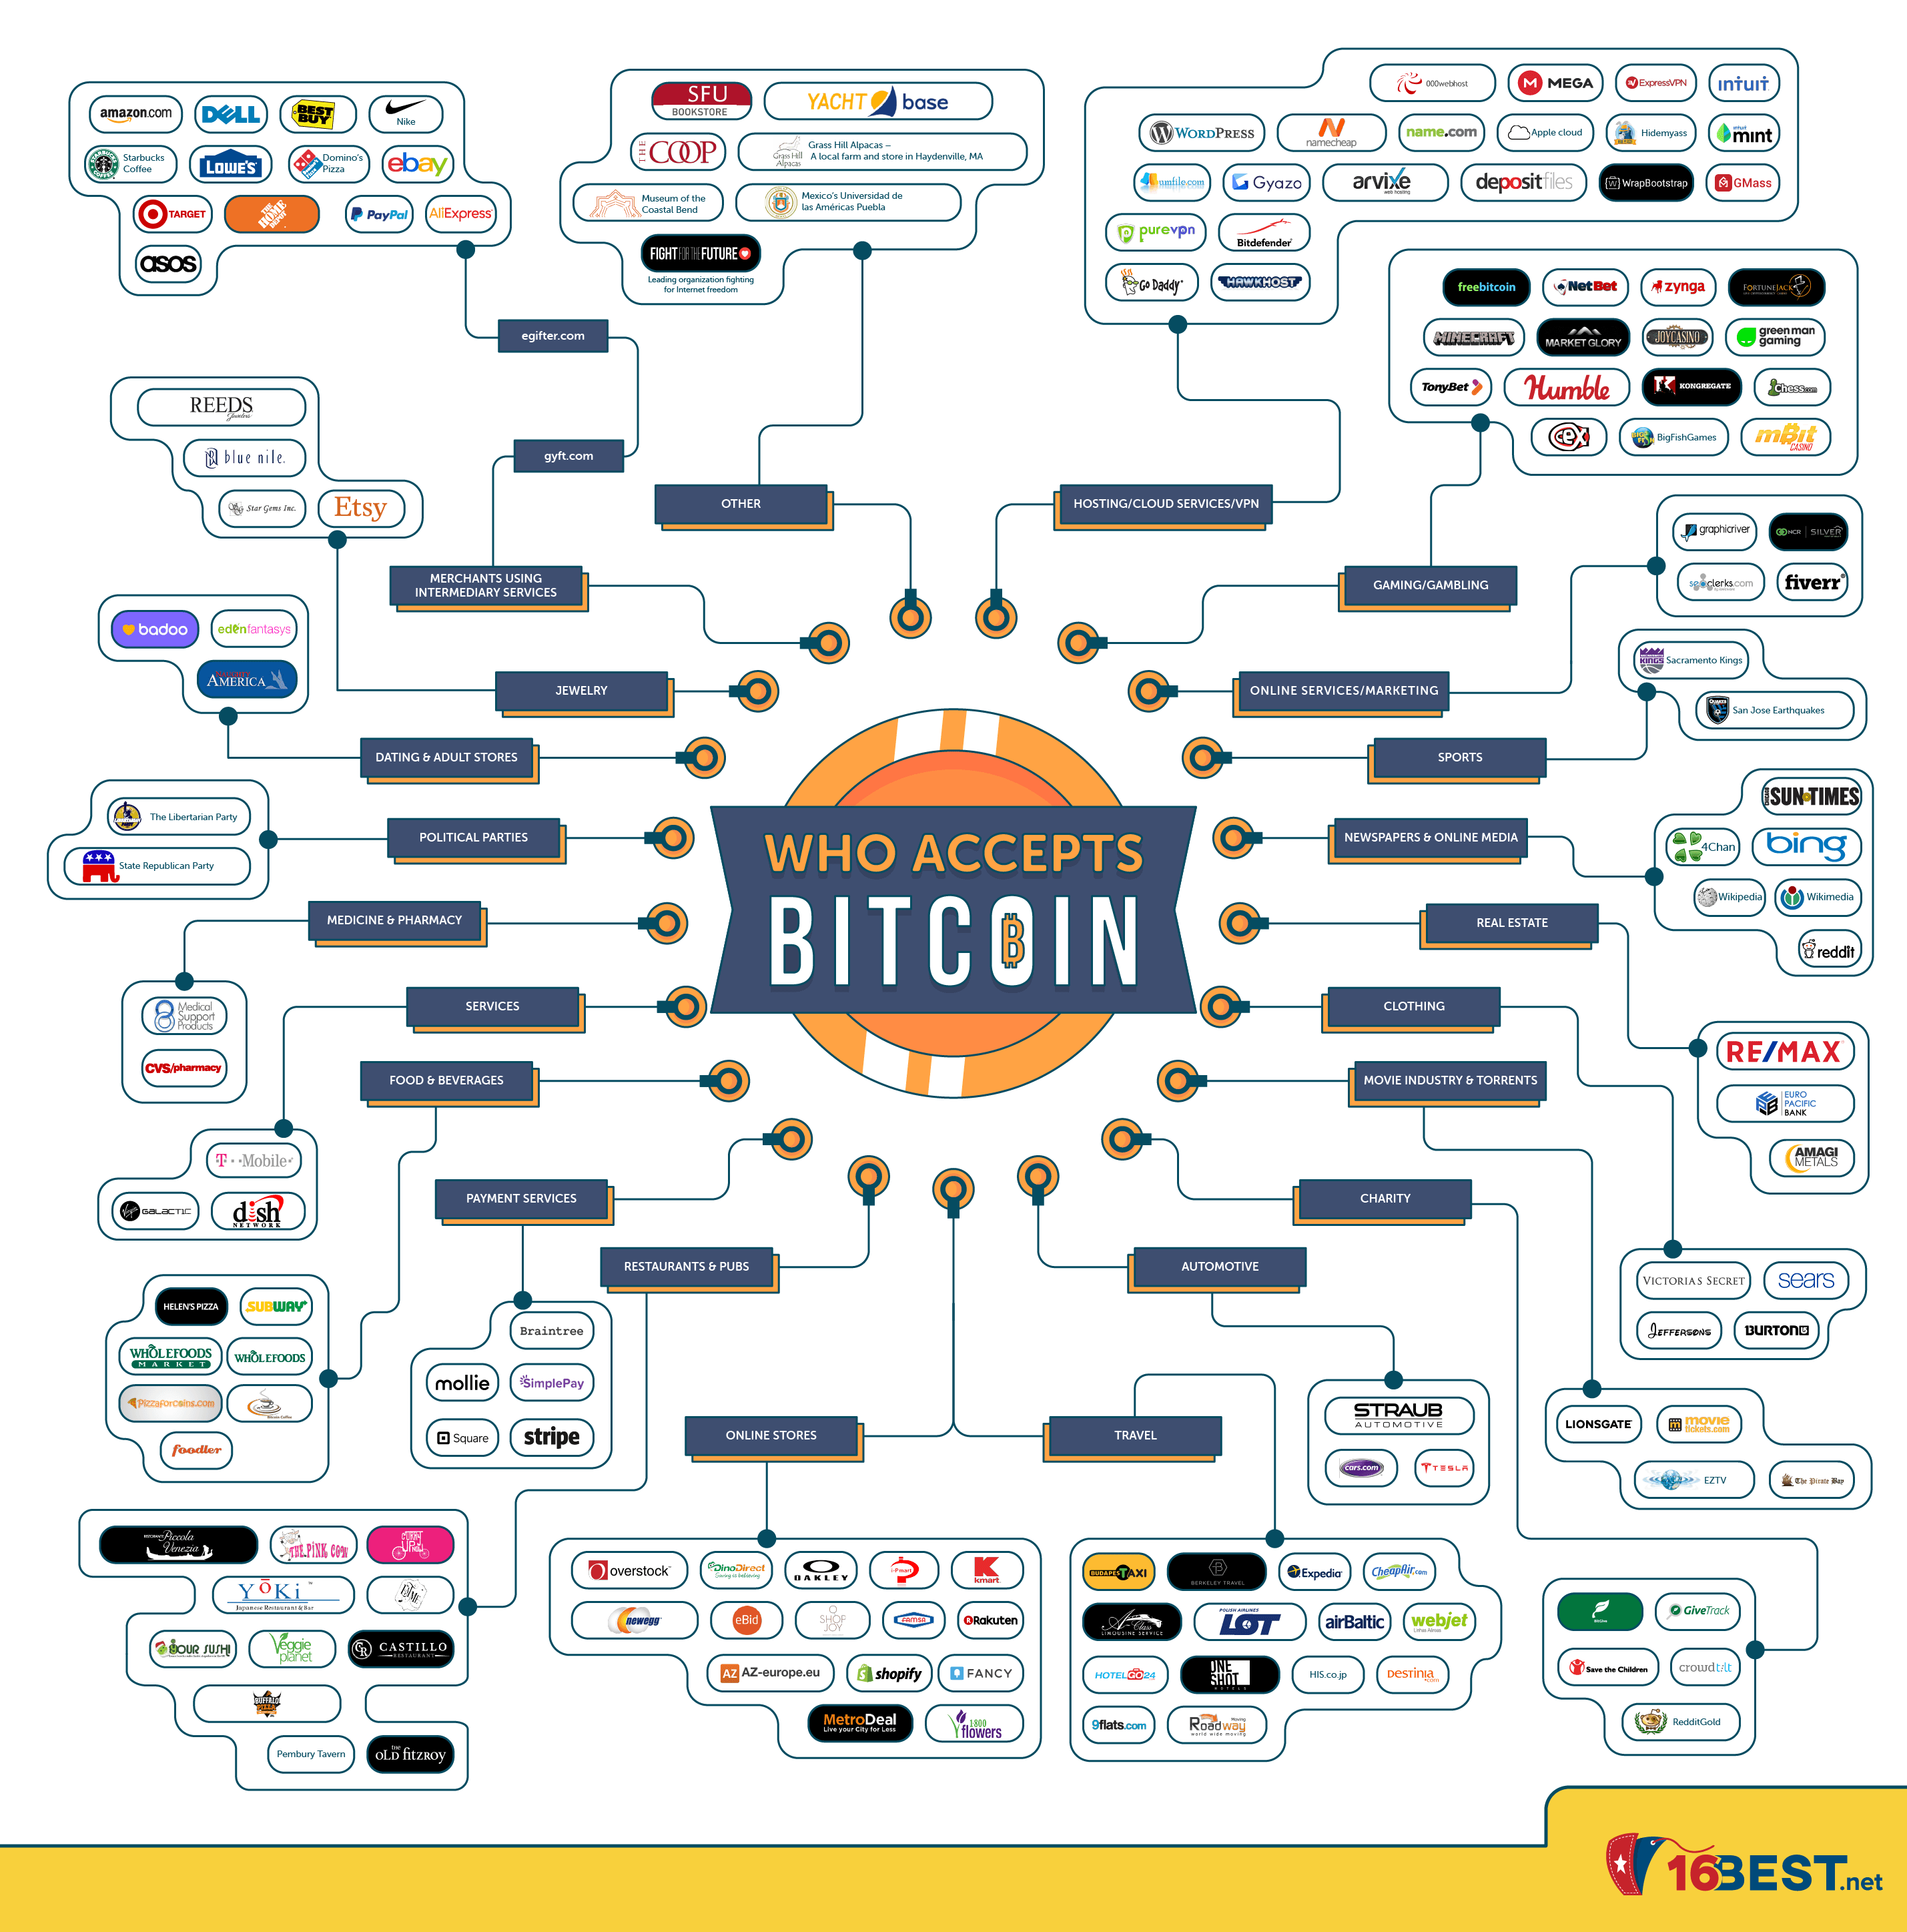 10 Major Companies That Accept Bitcoin